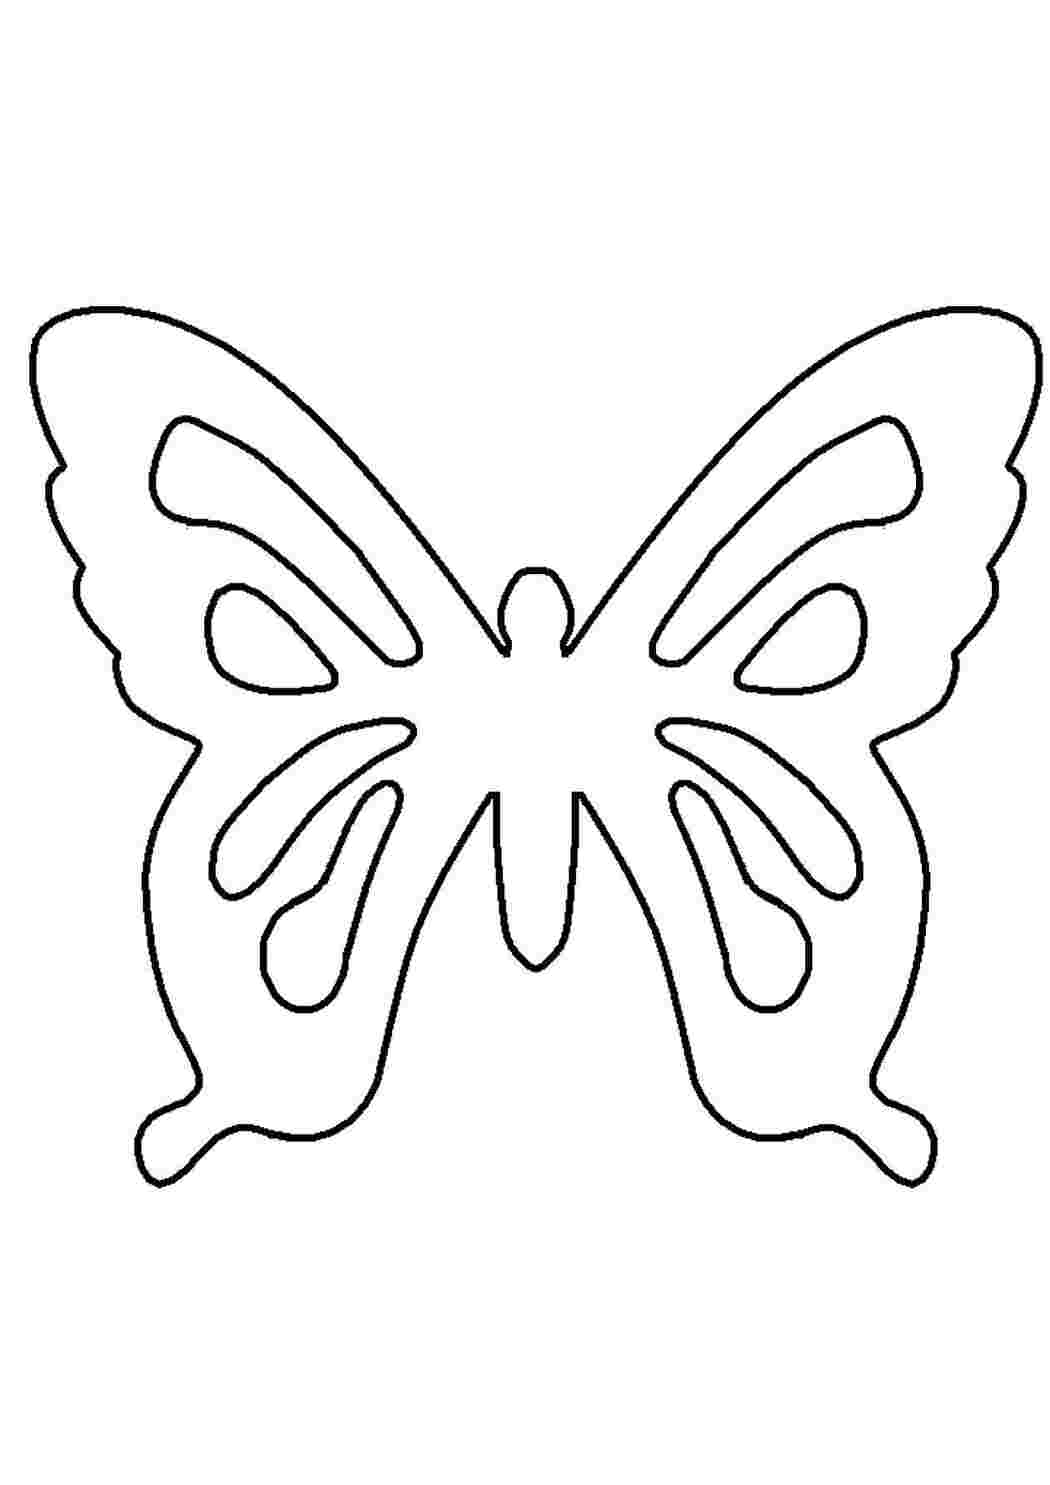 Раскраски Контур бабочки для вырезания контуры для вырезания бабочек контуры, шаблоны, бабочки